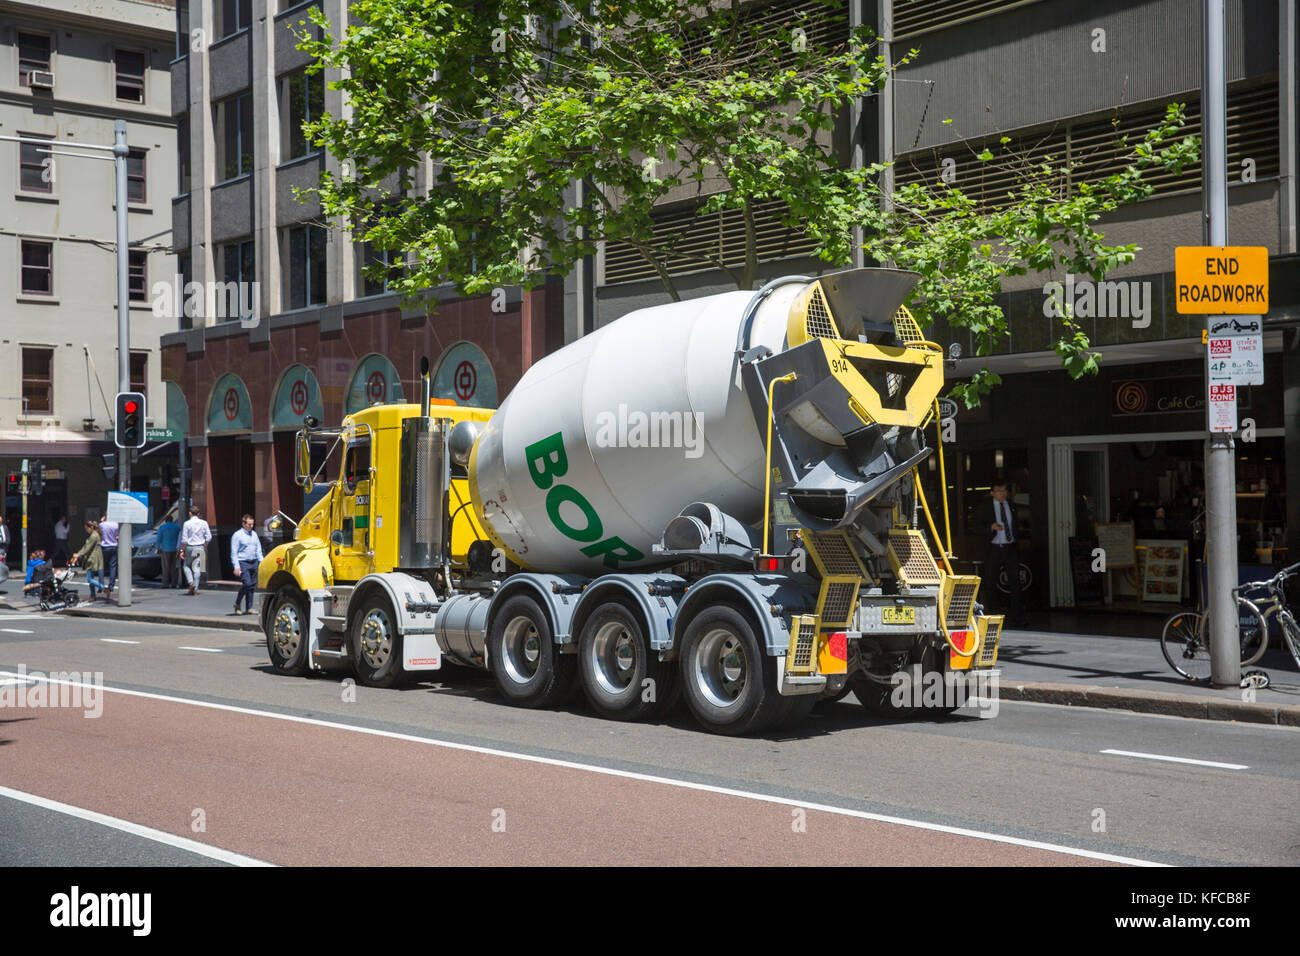 Camion de béton prêt à l'emploi Boral dans le centre-ville de Sydney, en Australie, Boral est le plus grand fournisseur de matériaux de construction d'Australie Banque D'Images